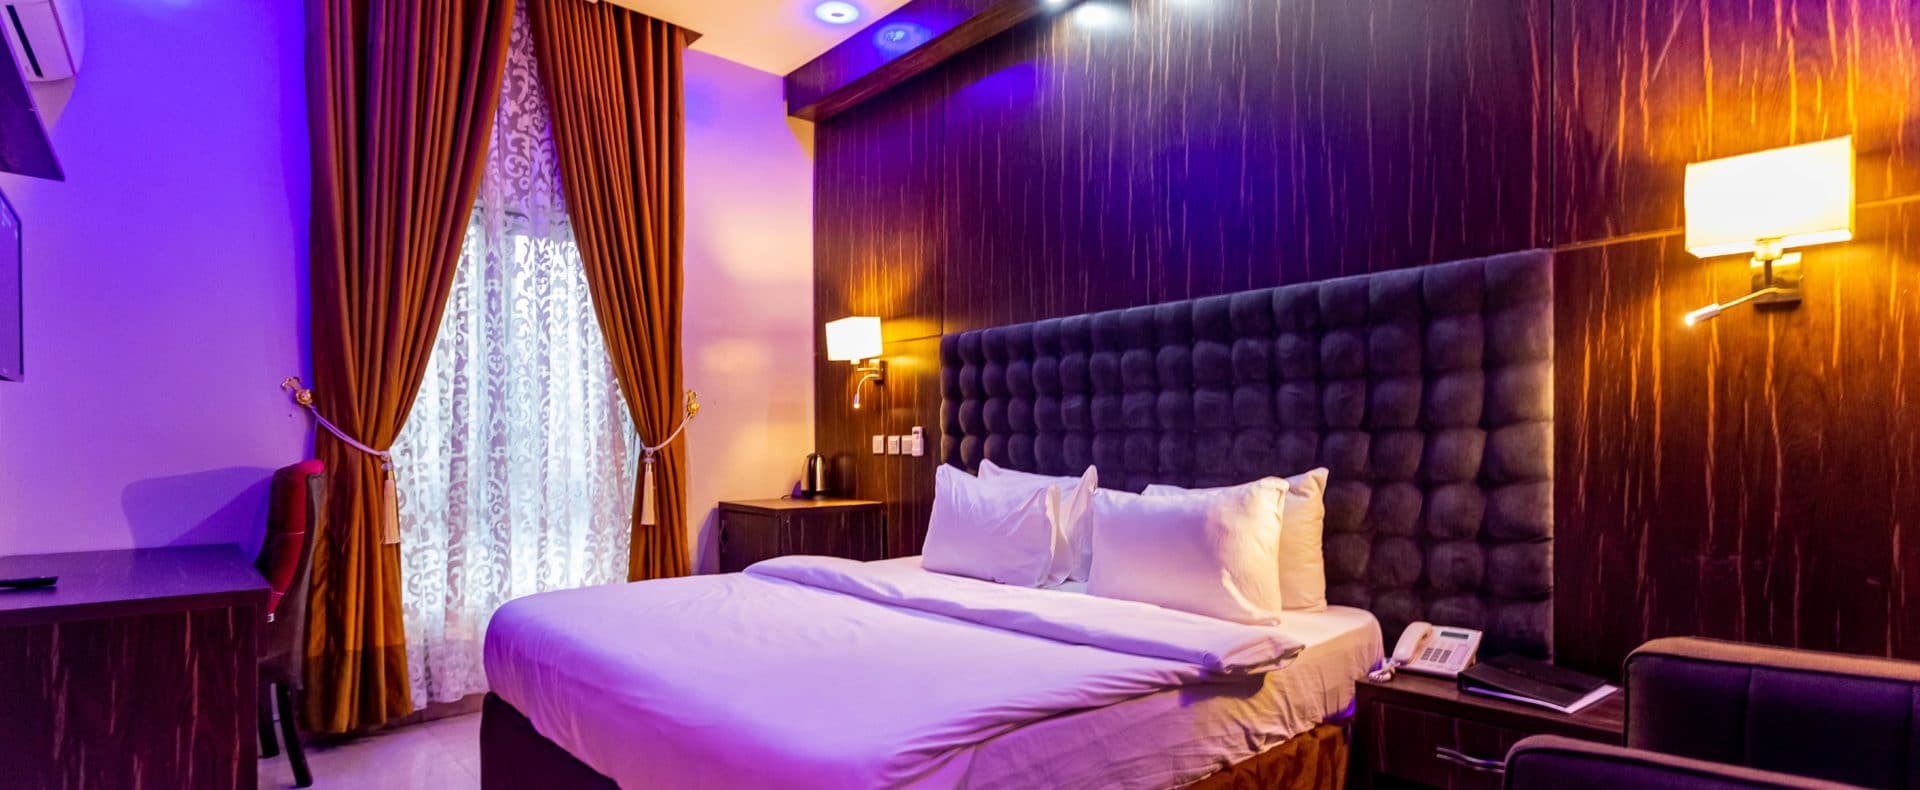 Hotel Silver Room In Owerri Imo Nigeria